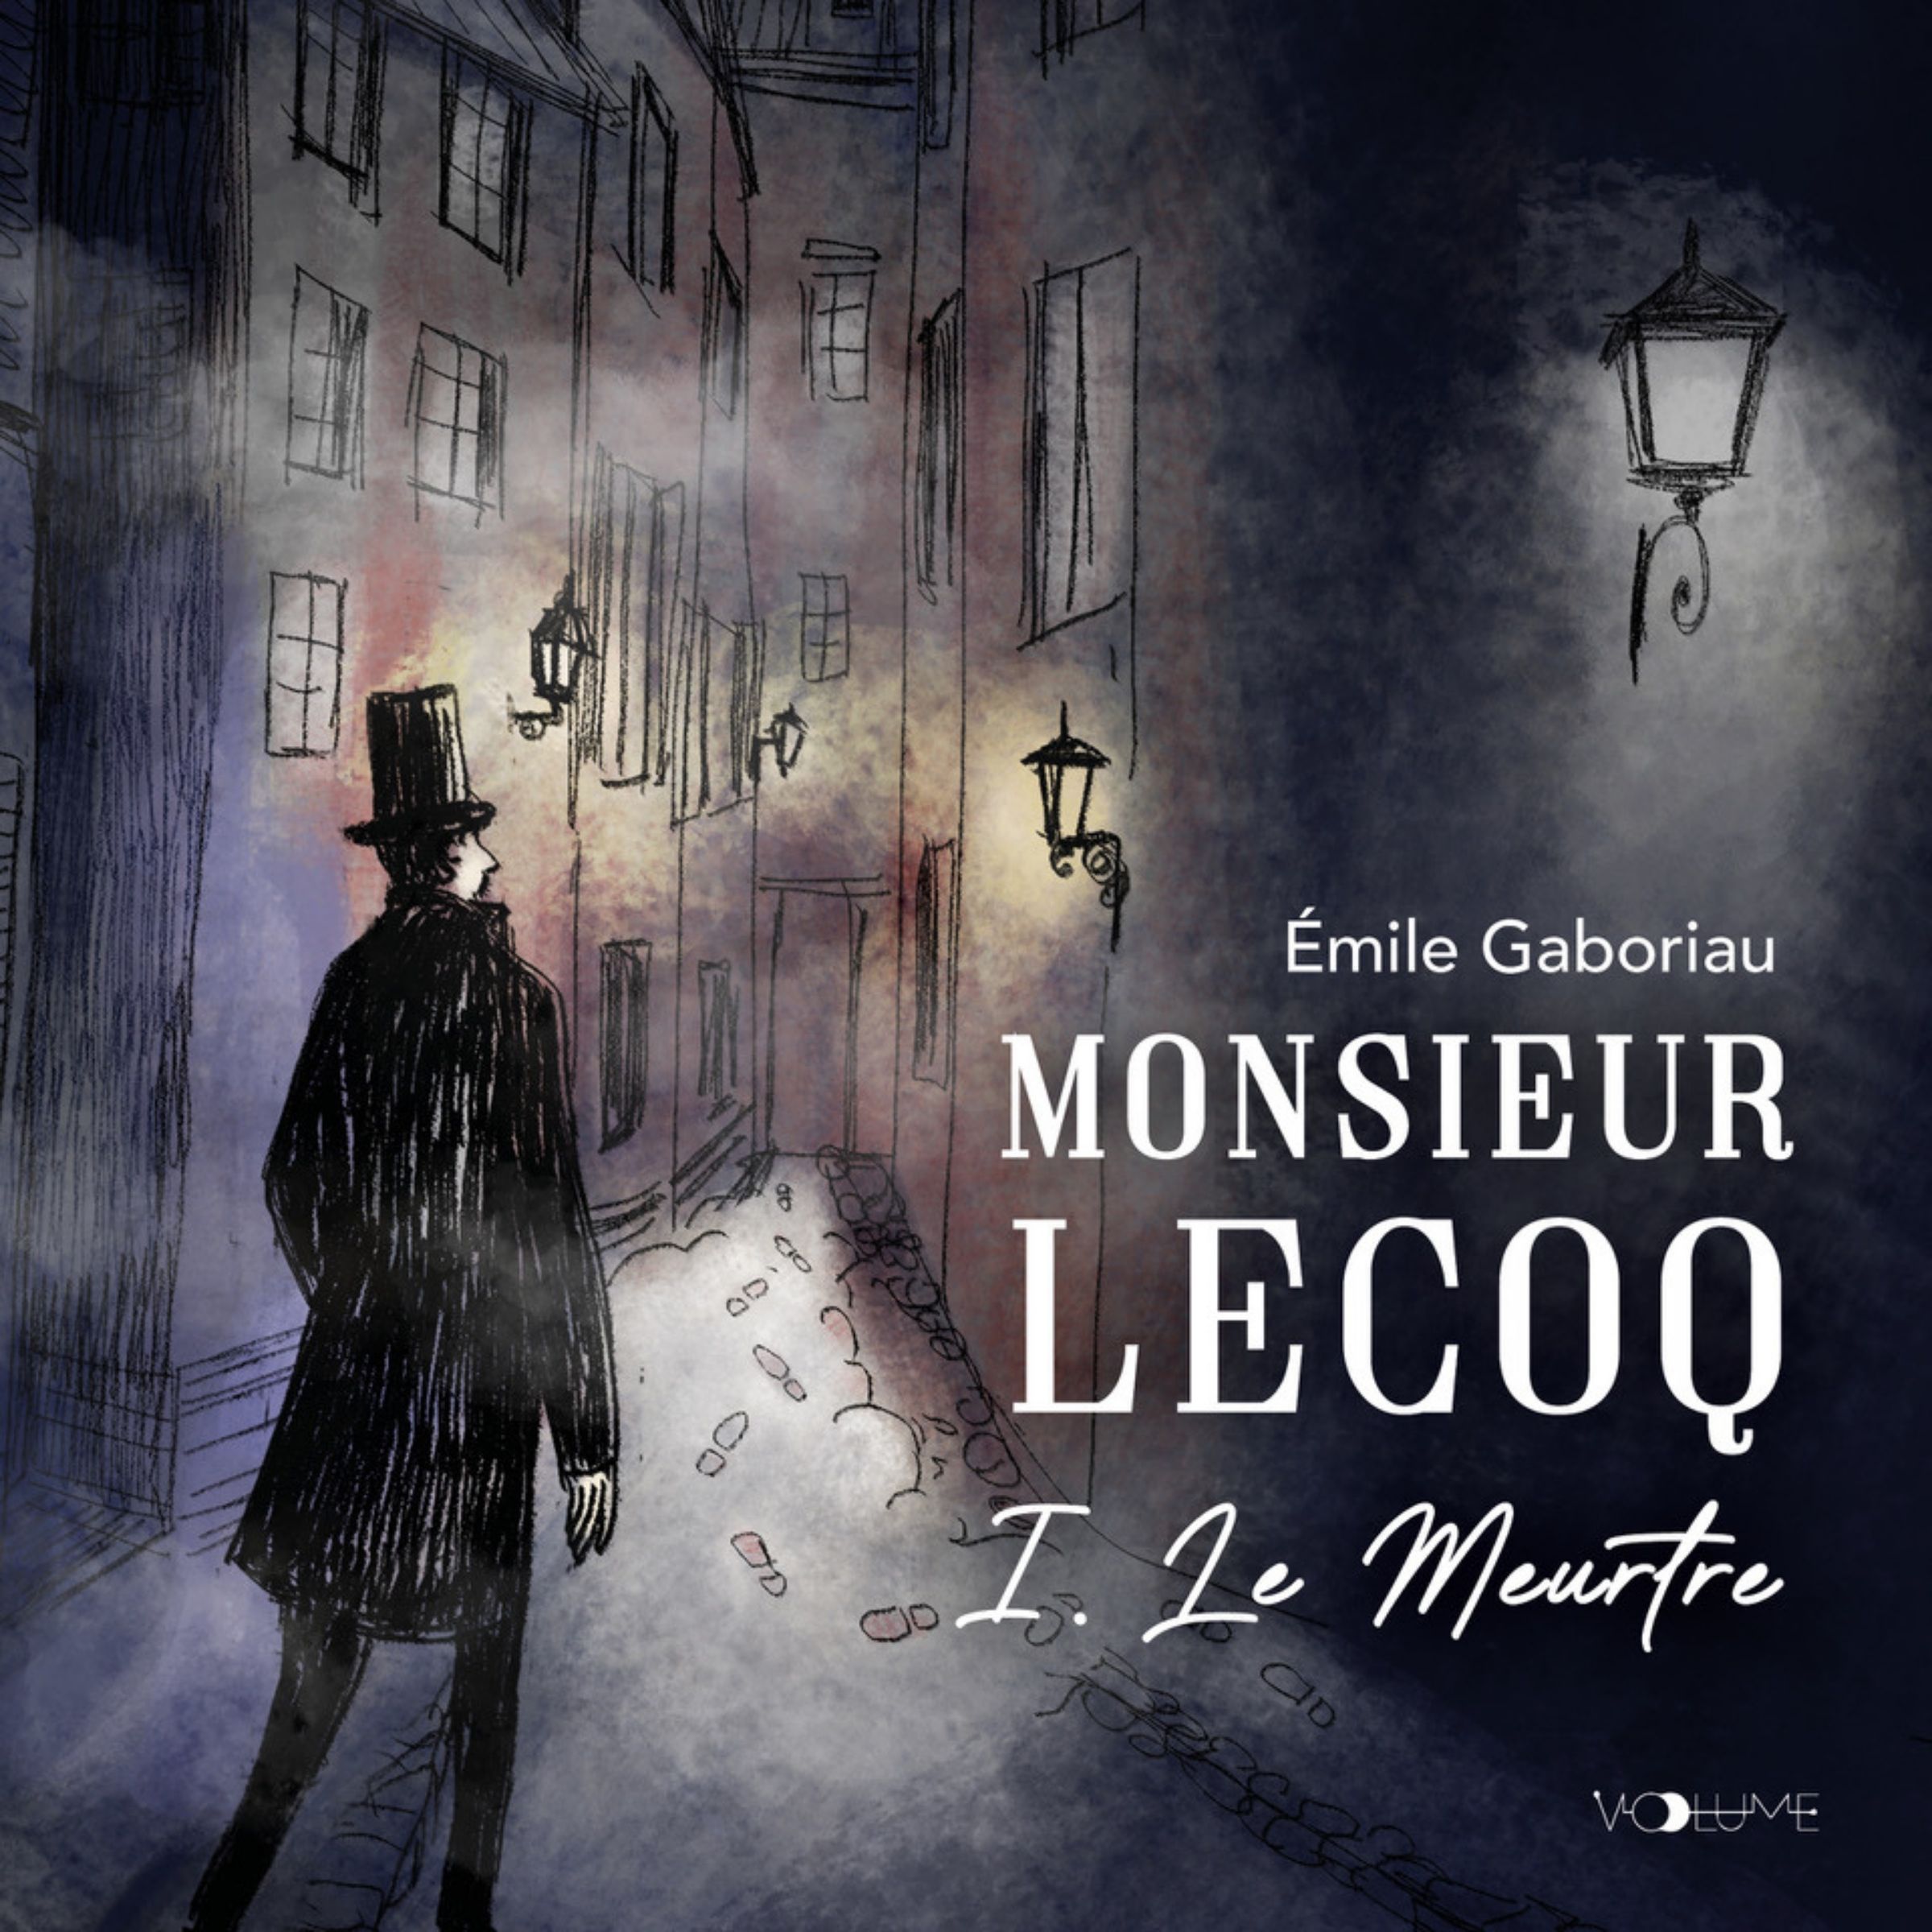 Couverture du livre audio Monsieur Lecoq, Tome 1 De Emile Gaboriau 